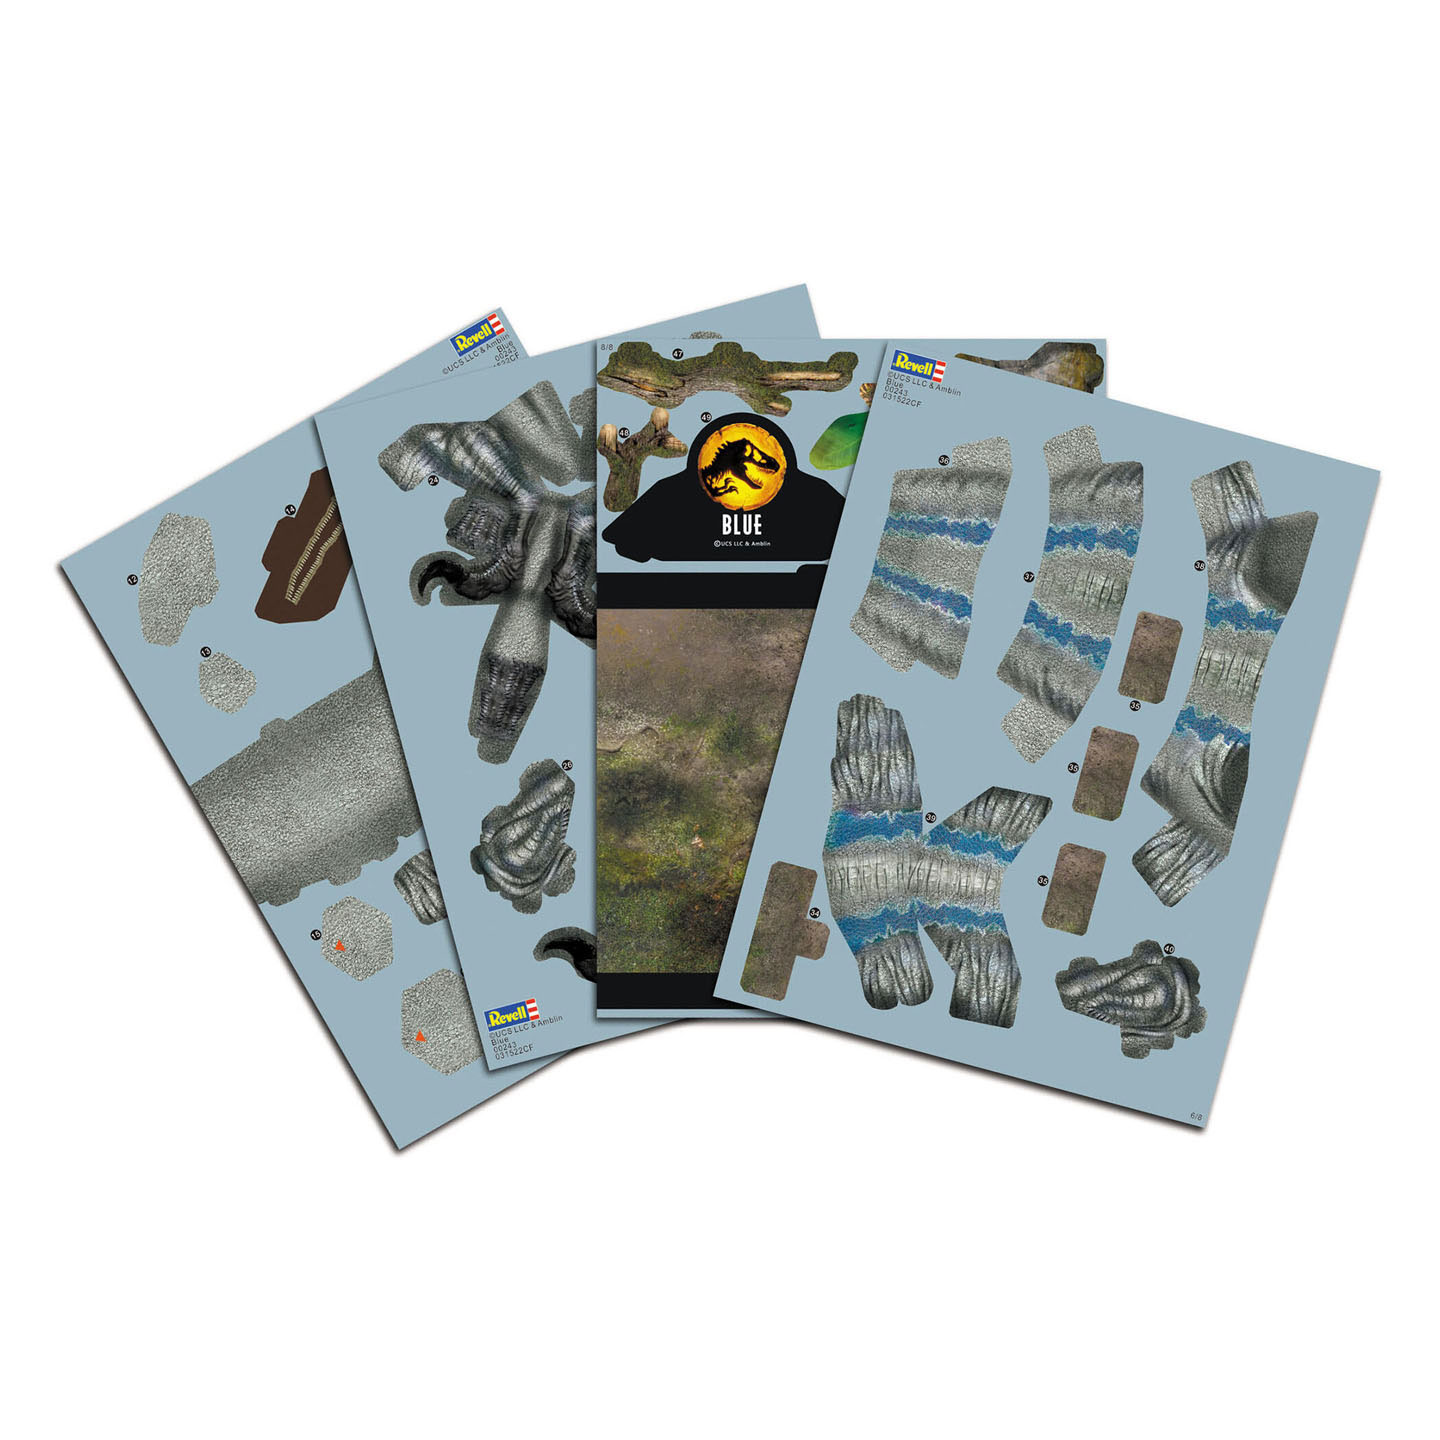 Kit de construction de puzzle Revell 3D - Jurassic World Dominion Blue